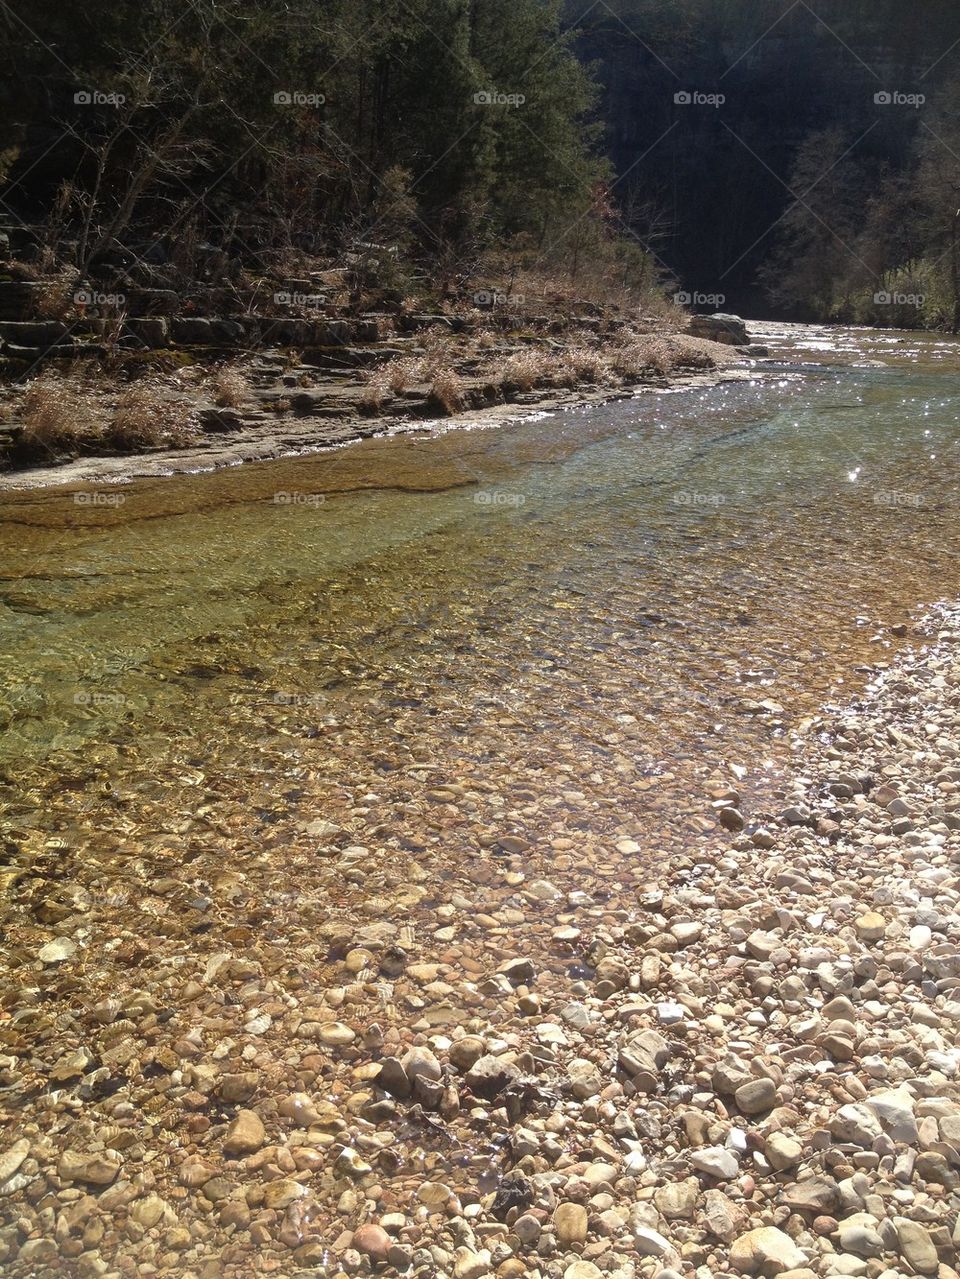 N Sylamore creek trail